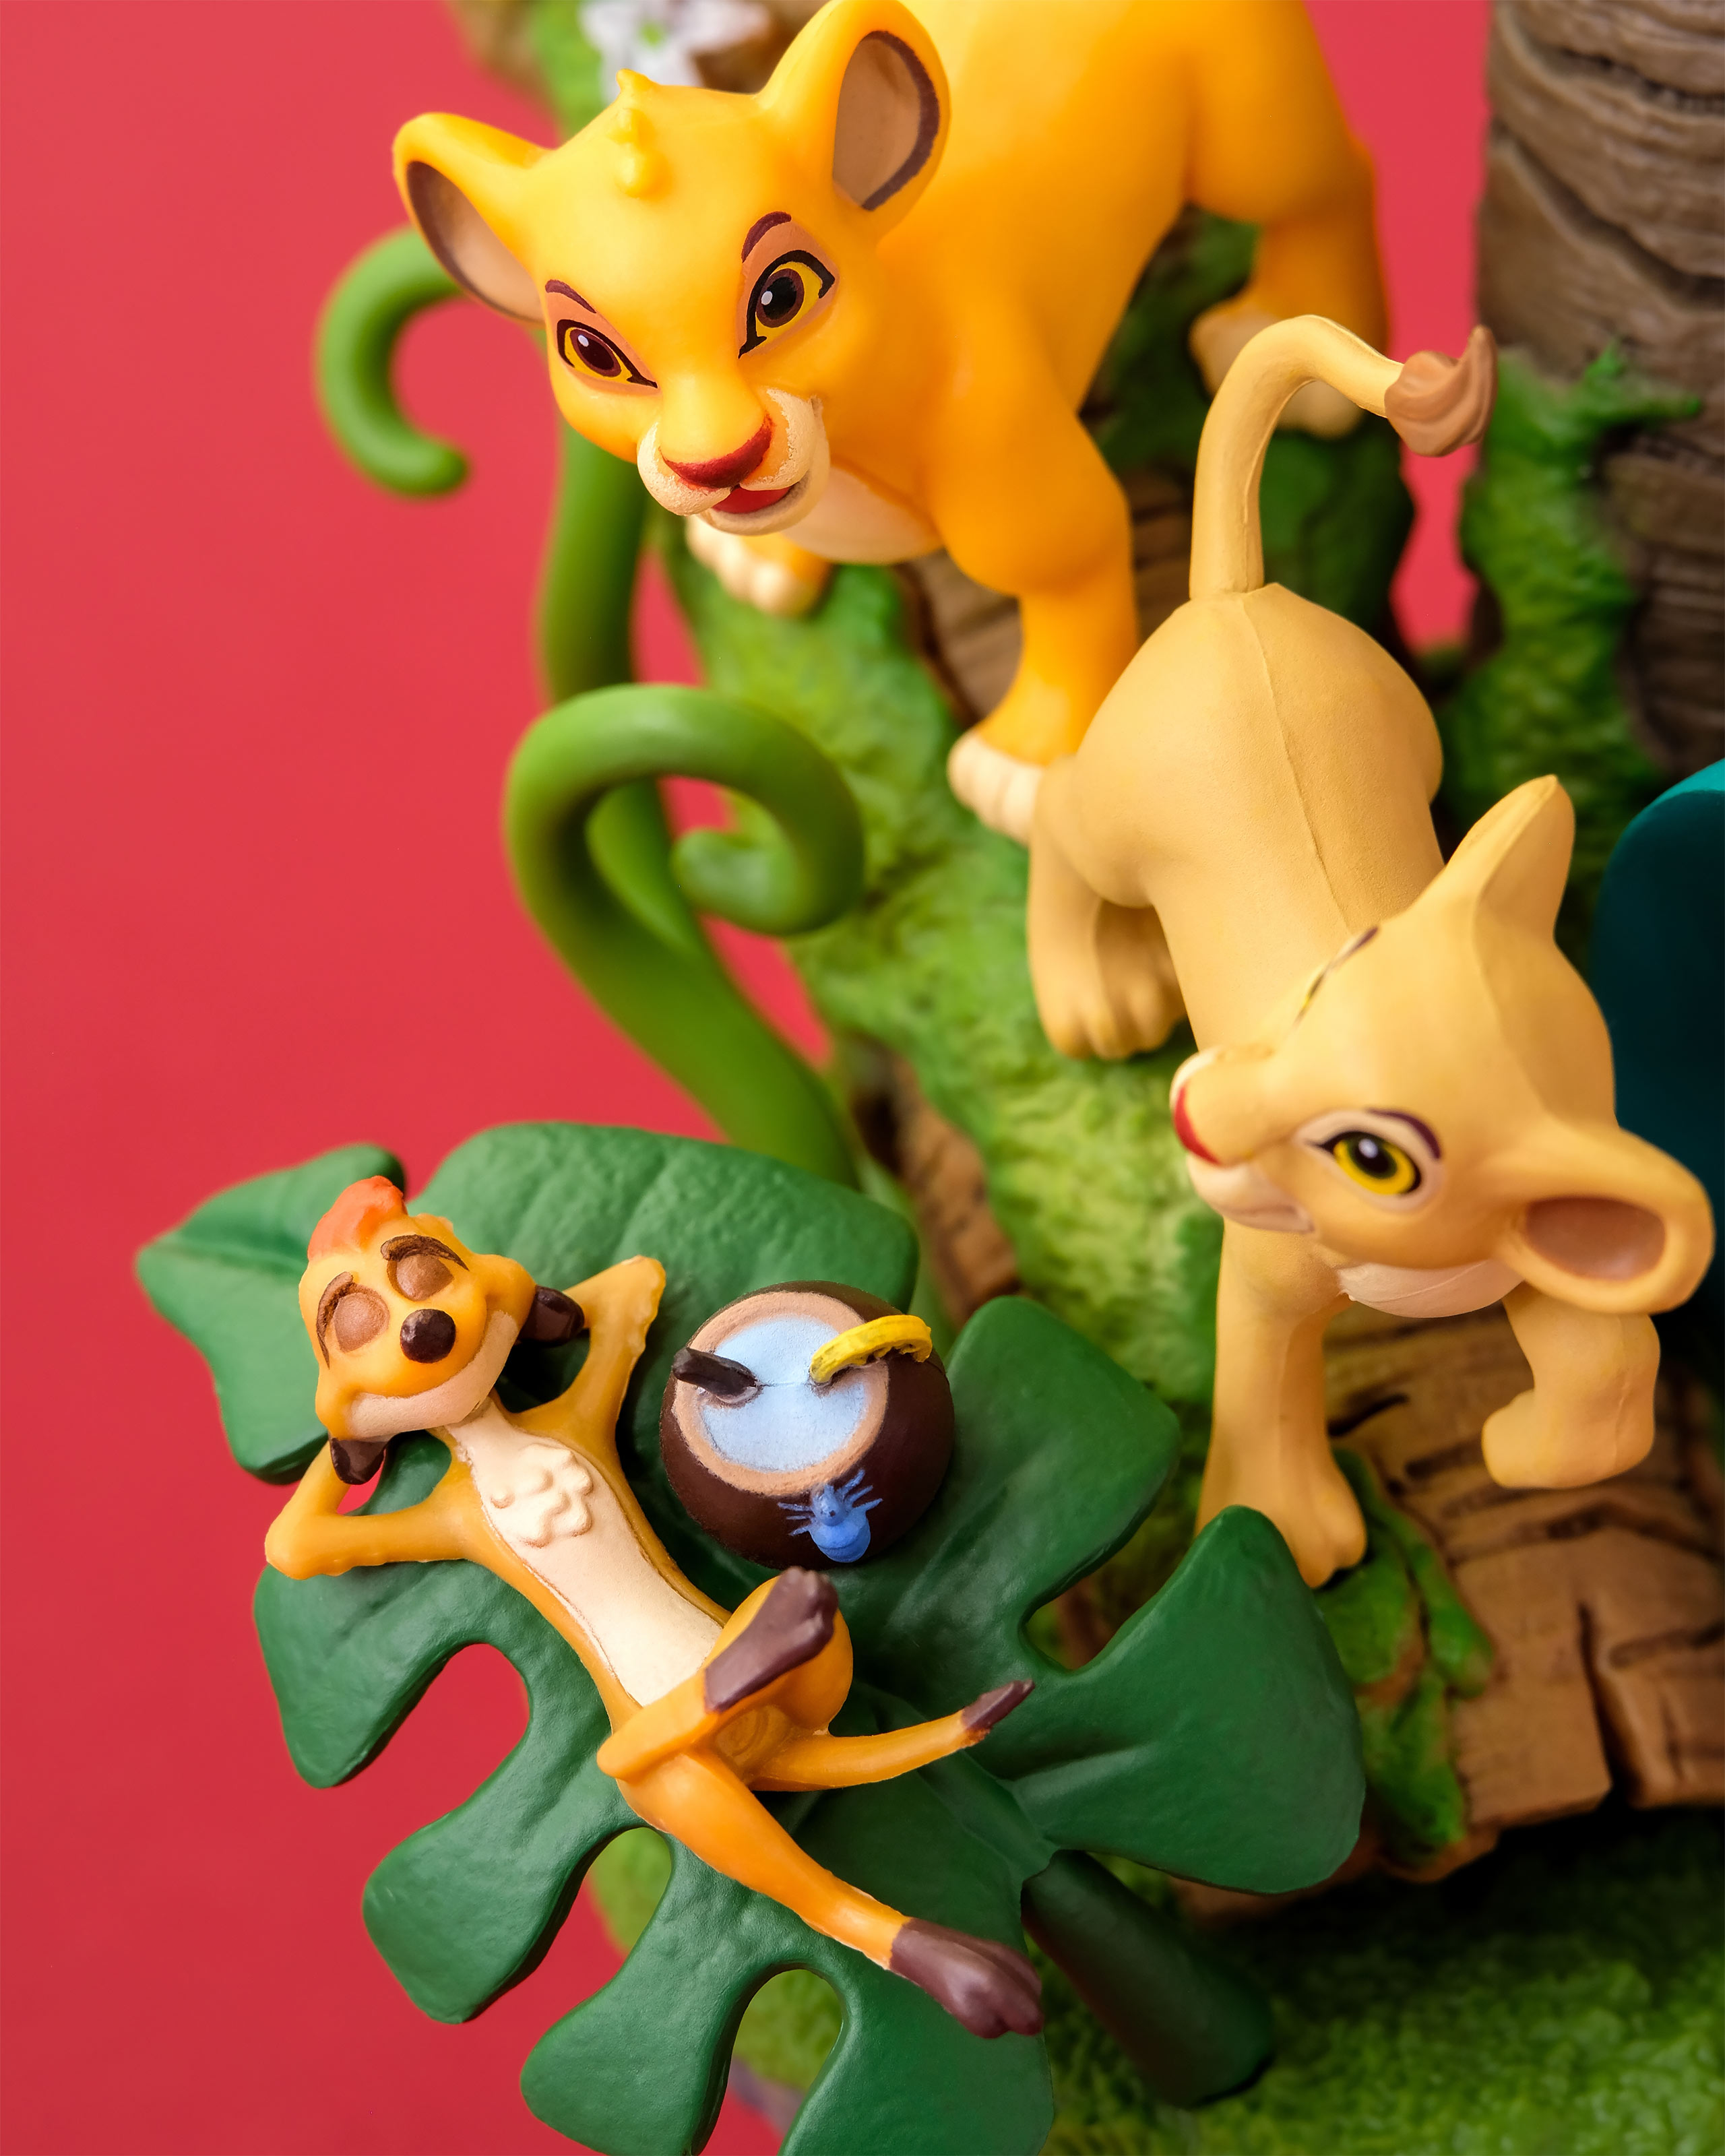 The Lion King - Simba and Nala Diorama